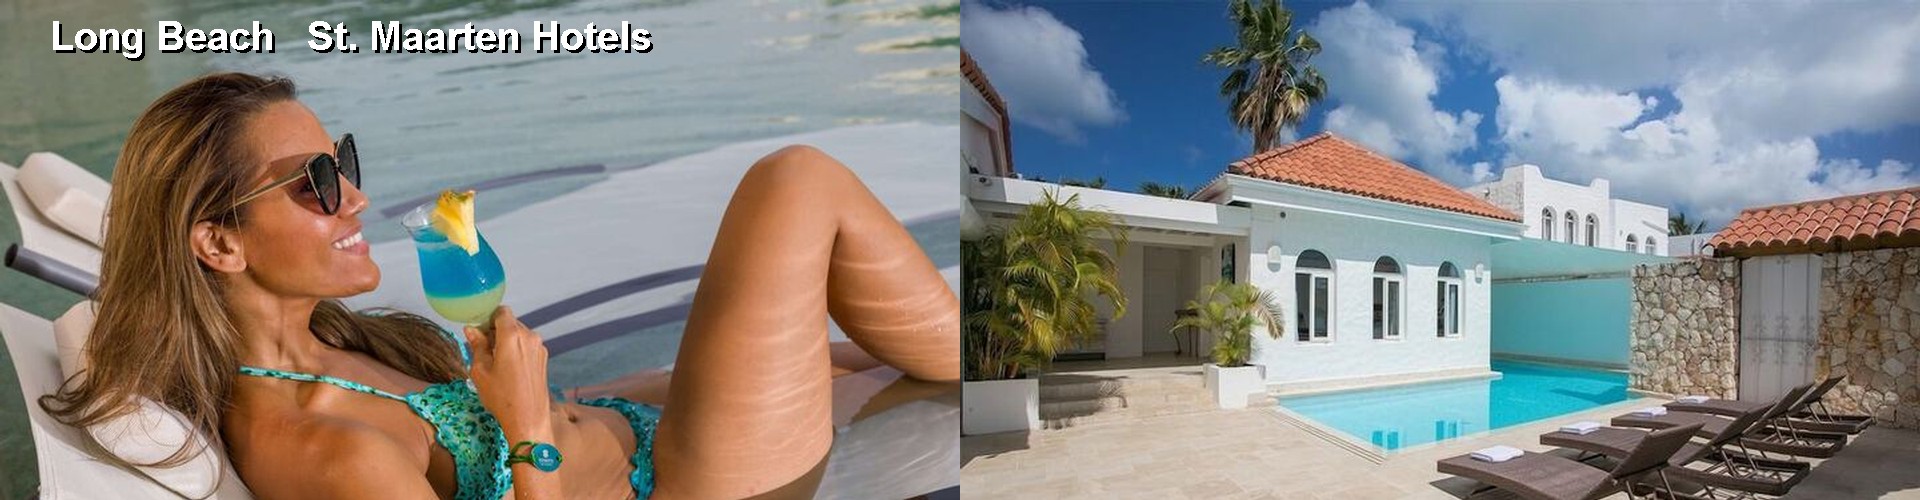 5 Best Hotels near Long Beach   St. Maarten